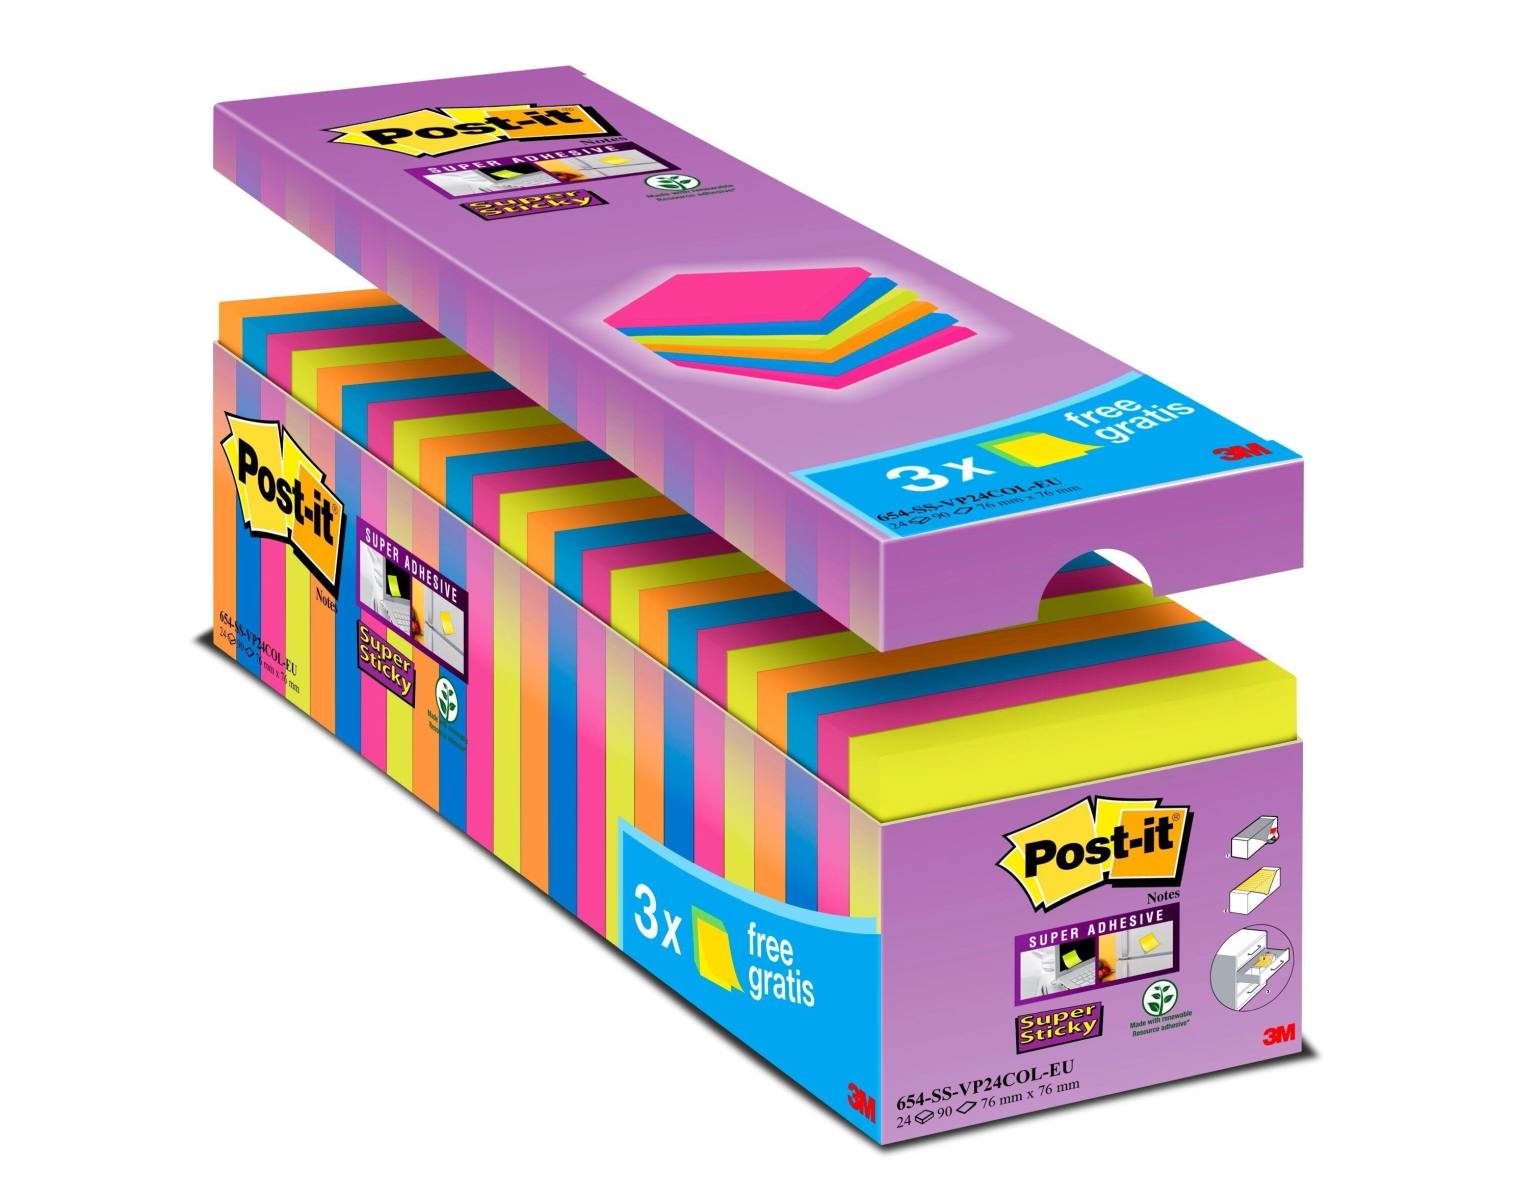 3M Post-it Super Sticky Notes Promotion 654SE24P, 24 Blöcke à 90 Blatt zum Vorteilspreis, farblich sortiert, 76 mm x 76 mm